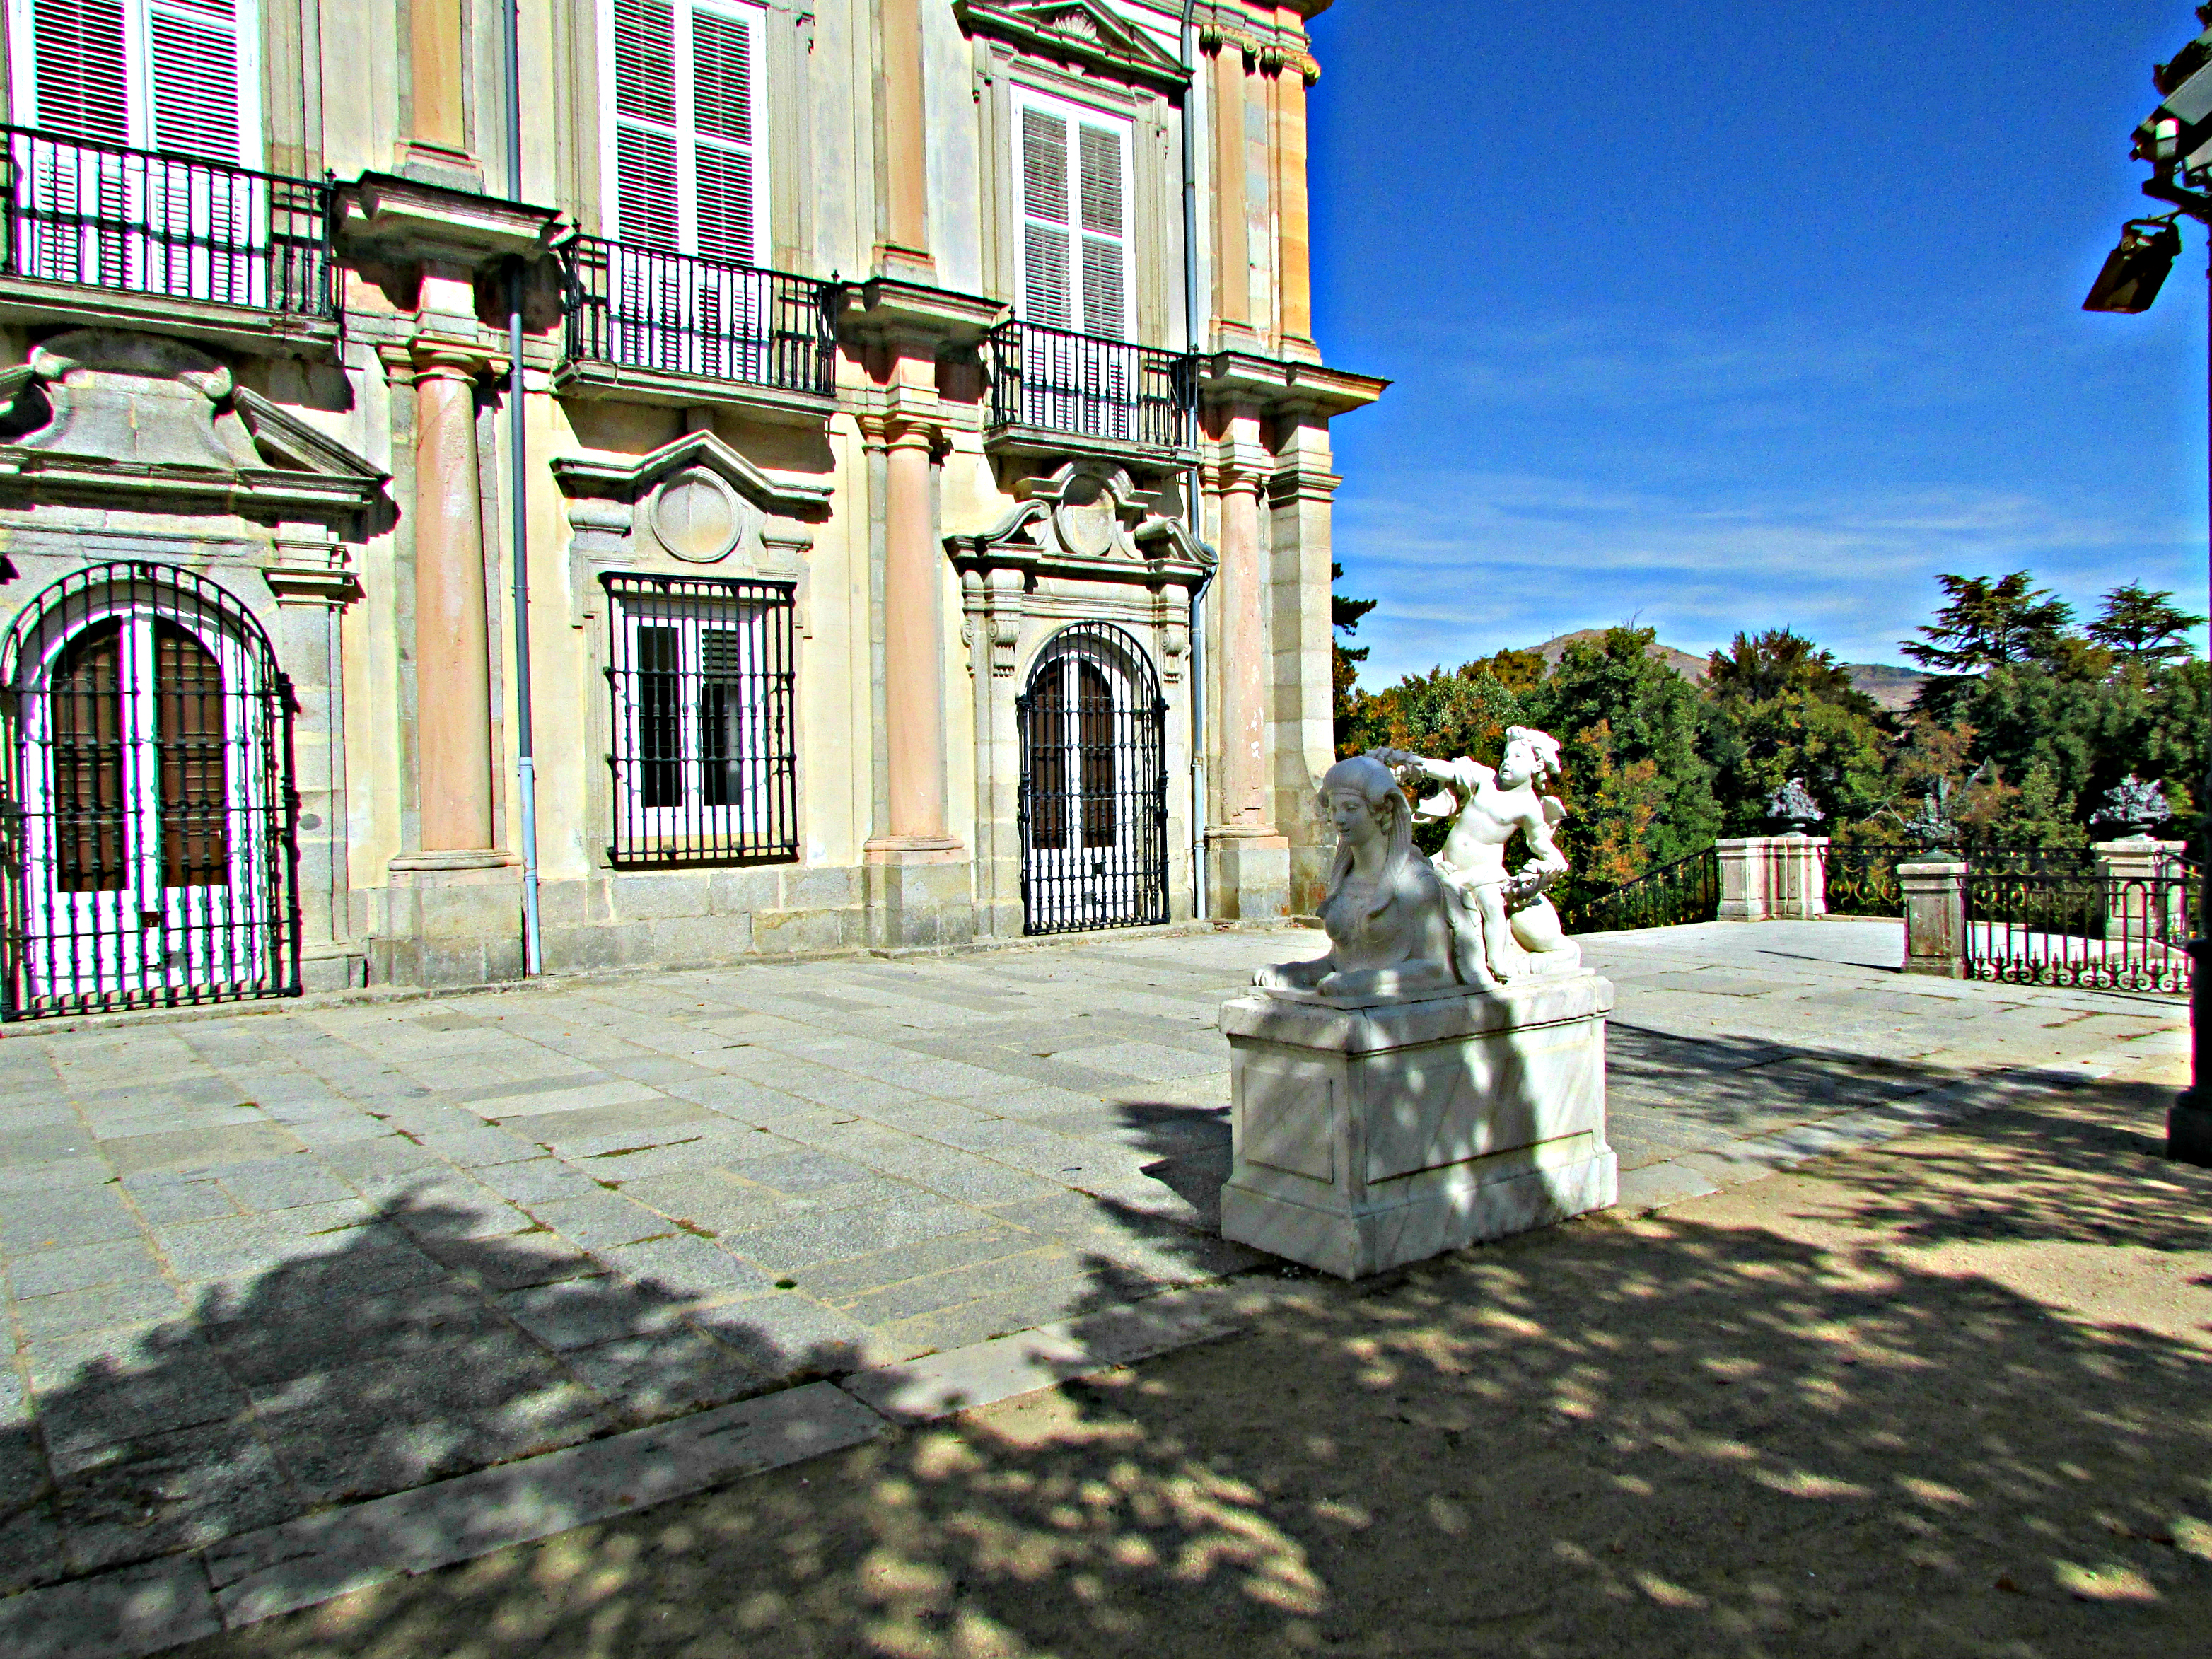 Terrace at Royal Palace of La Granja